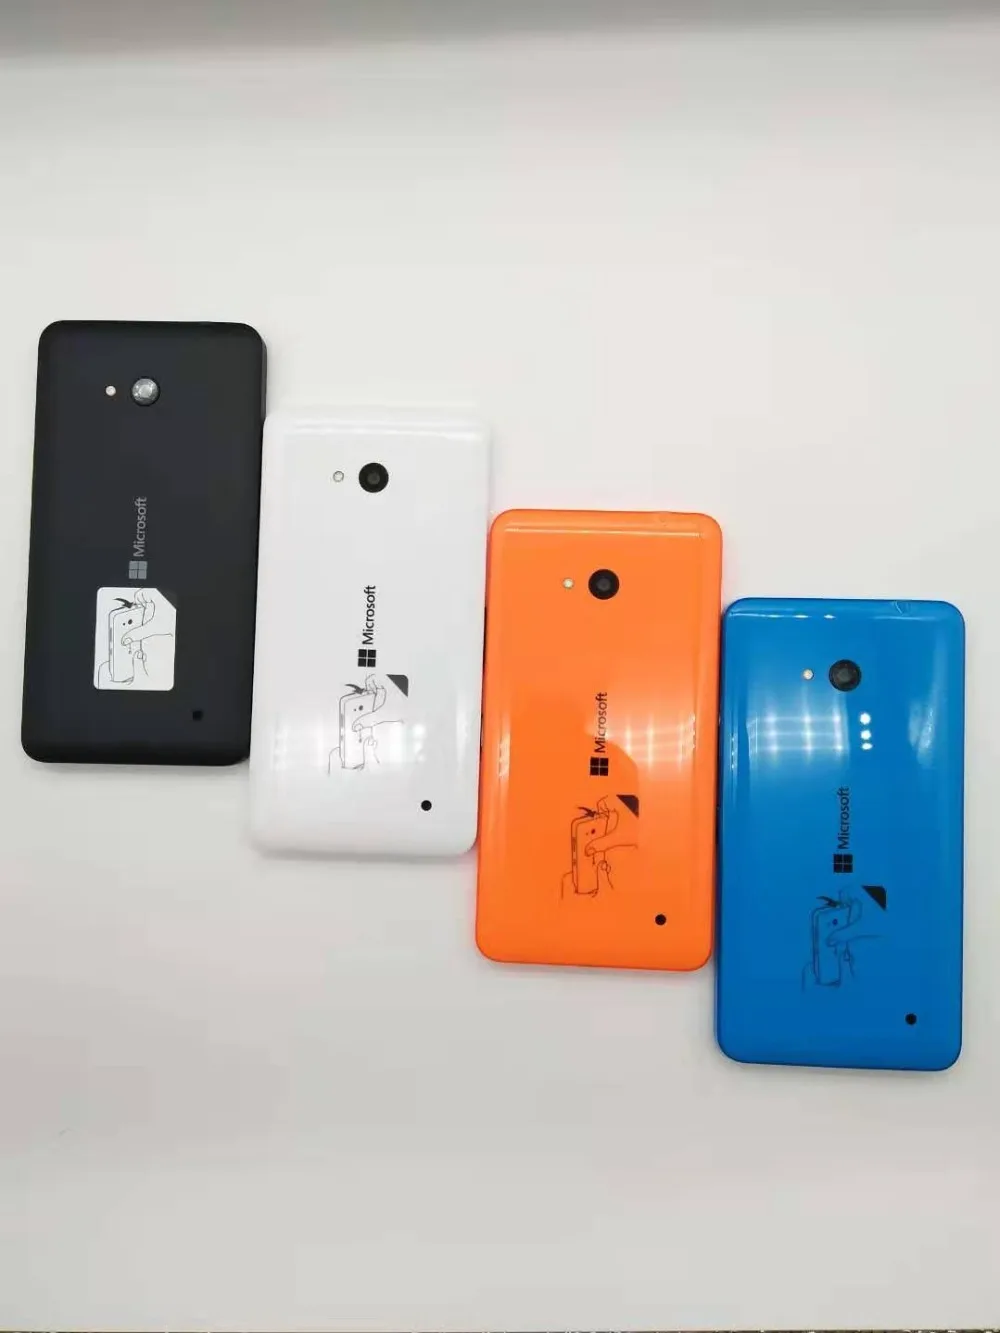 100% Оригинальный microsoft Lumia 640 8MP камера четырехъядерный 8 ГБ rom 1 ГБ Гб ram мобильный телефон LTE FDD 4G 5,0 "720x1280 Бесплатная доставка